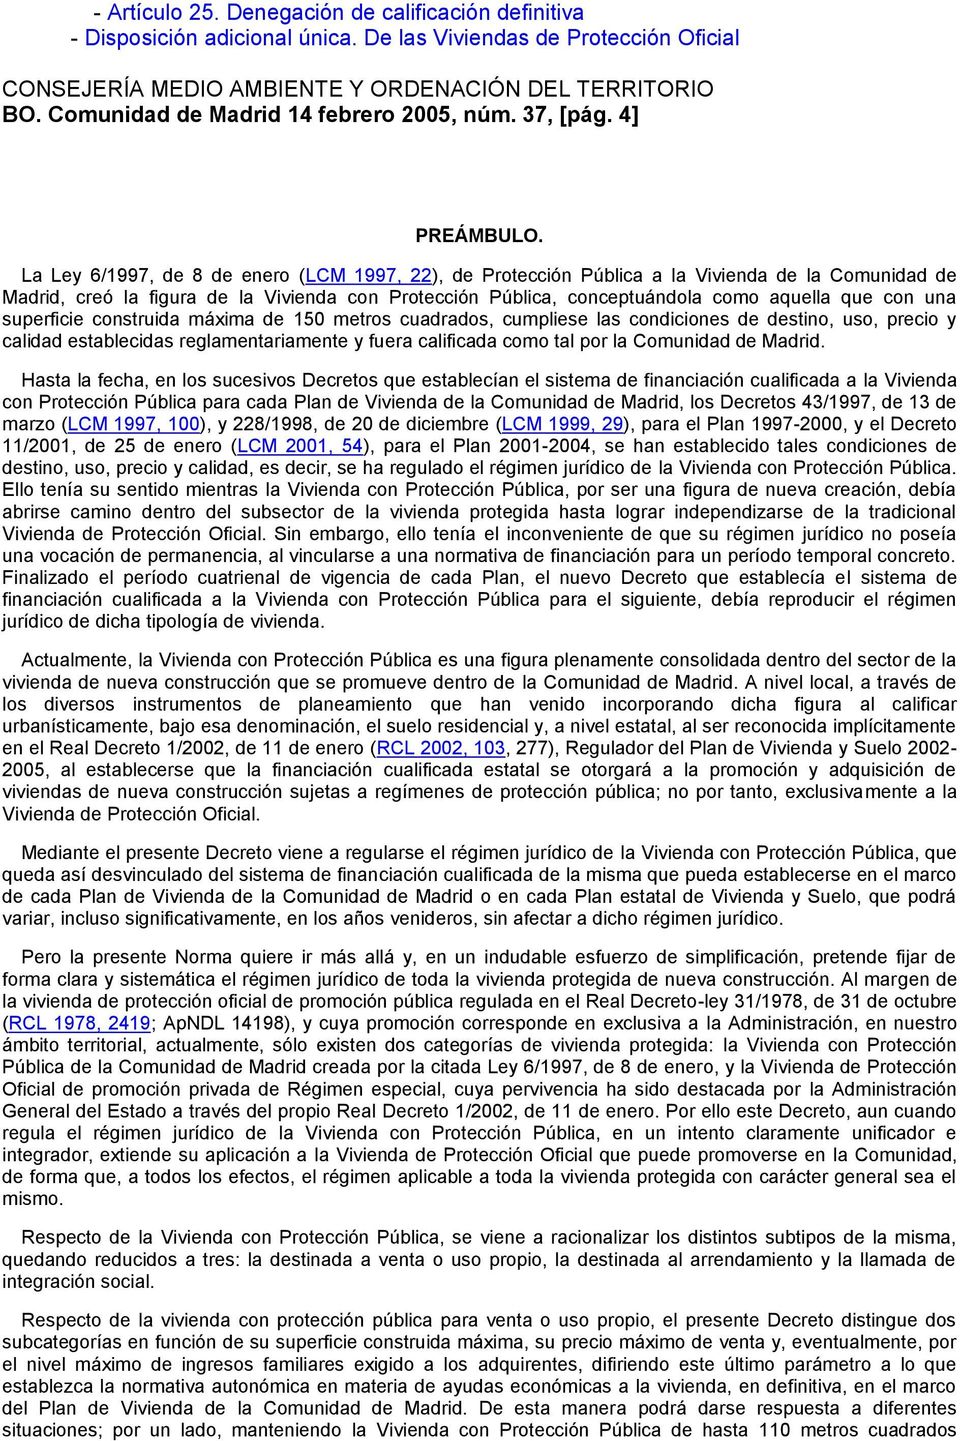 La Ley 6/1997, de 8 de enero (LCM 1997, 22), de Protección Pública a la Vivienda de la Comunidad de Madrid, creó la figura de la Vivienda con Protección Pública, conceptuándola como aquella que con